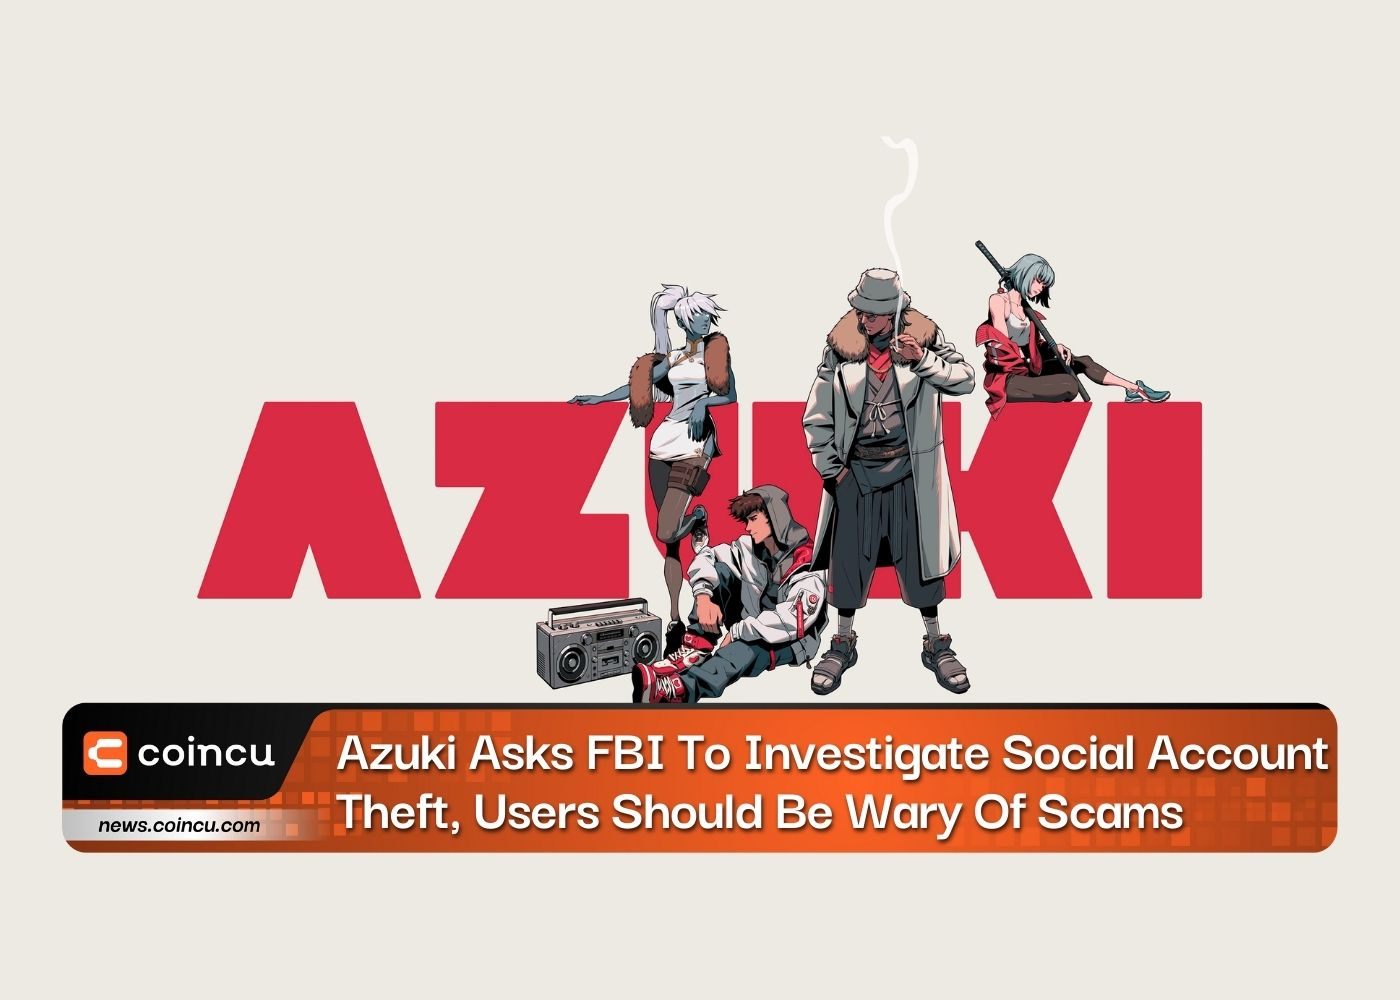 Azuki yêu cầu FBI điều tra hành vi trộm tài khoản mạng xã hội, người dùng nên cảnh giác với những trò lừa đảo